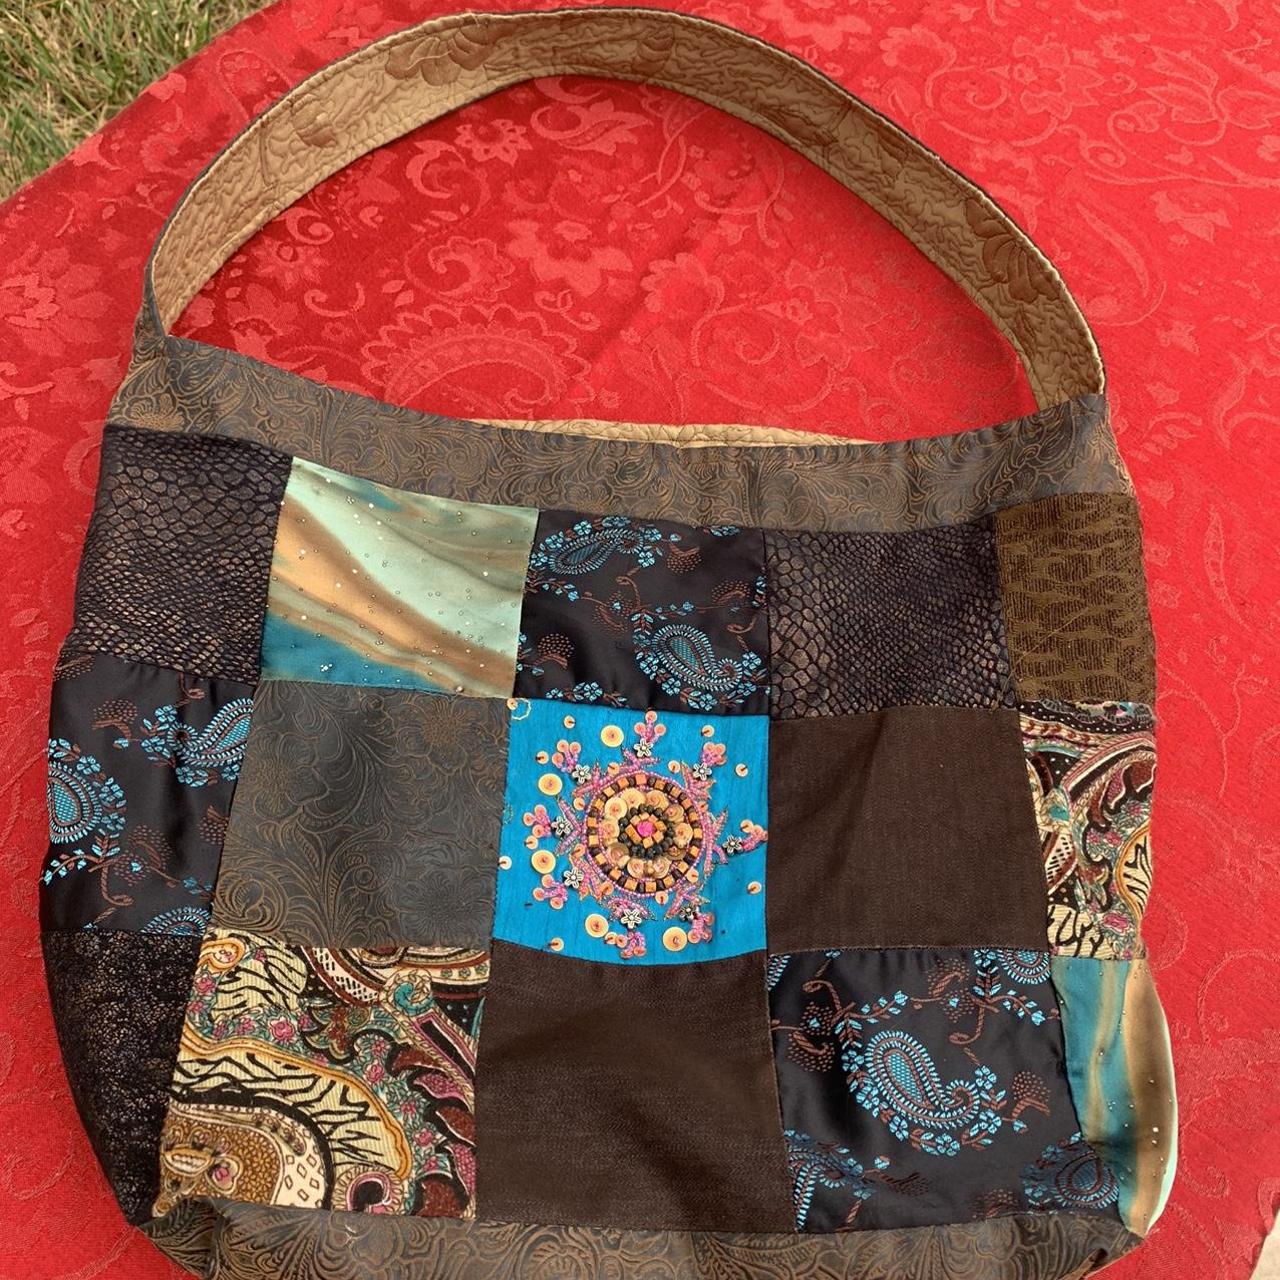 Made to Order Hobo Bag Crossbody Bag Patchwork Boho Purse Crazy Quilt Sling Bag  Handmade Hippie Purse Hobo Purse Boho Bag Bohemian Purse - Etsy | Hobo bag  patterns, Hippie purse, Patchwork bags